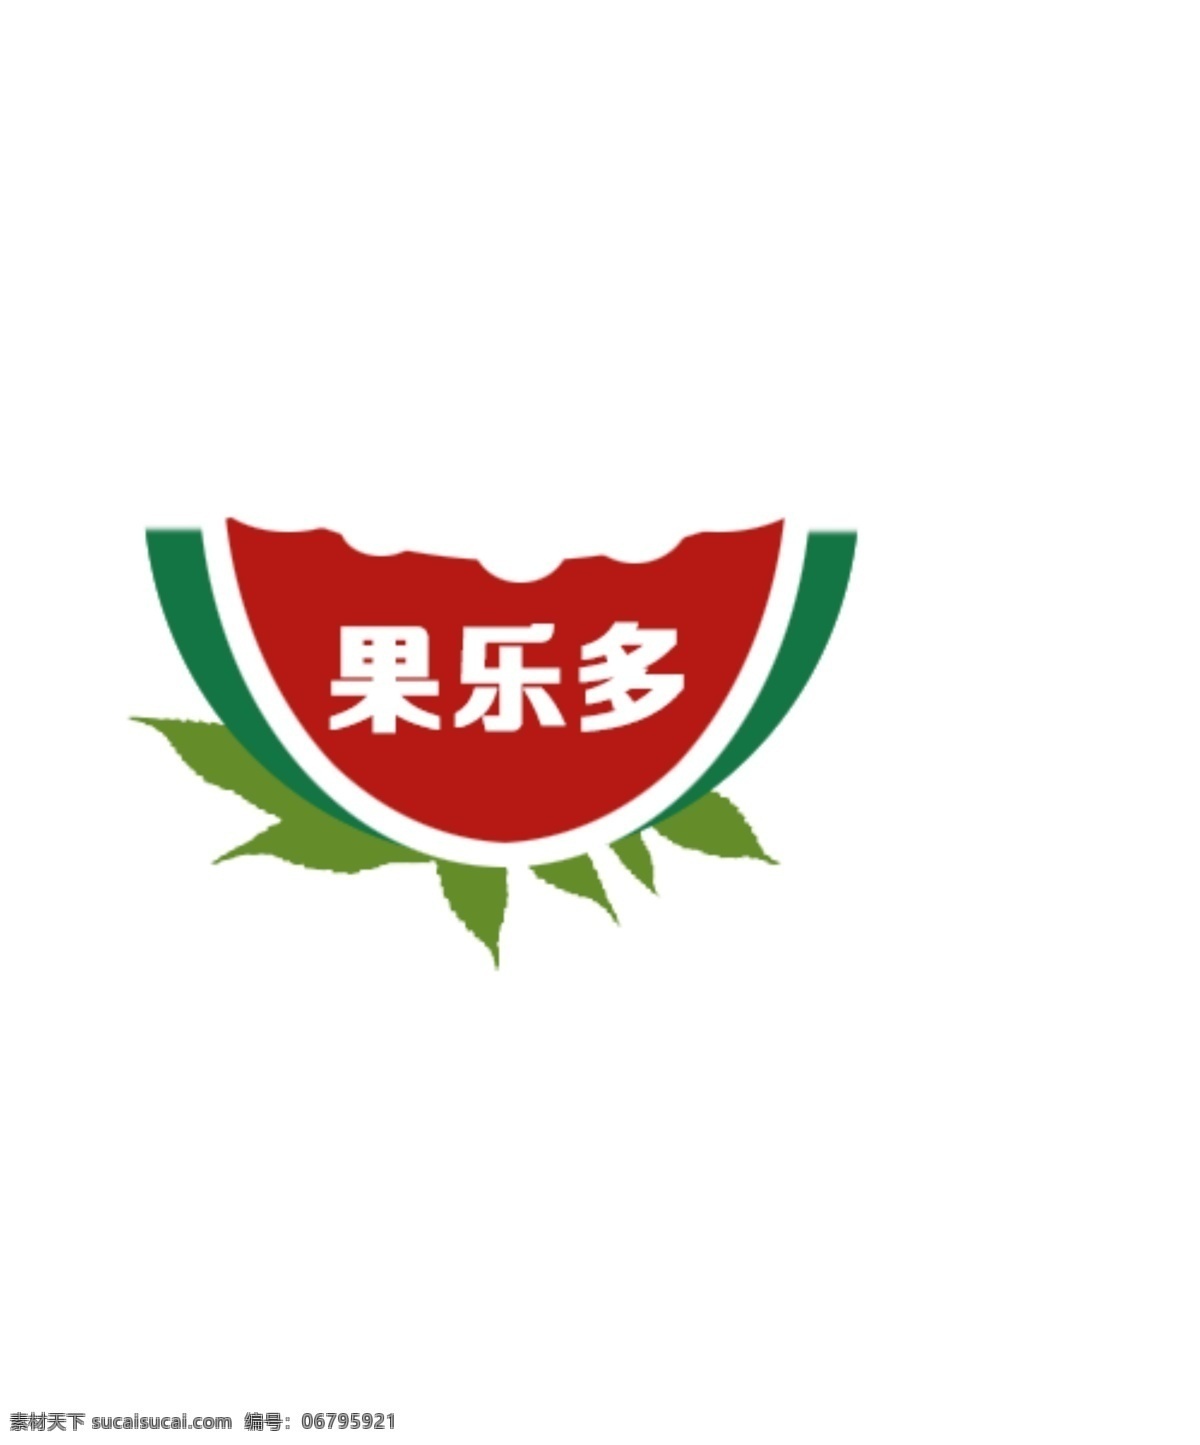 水果logo 西瓜logo logo 网站logo 通用logo 水果店 水果 西瓜